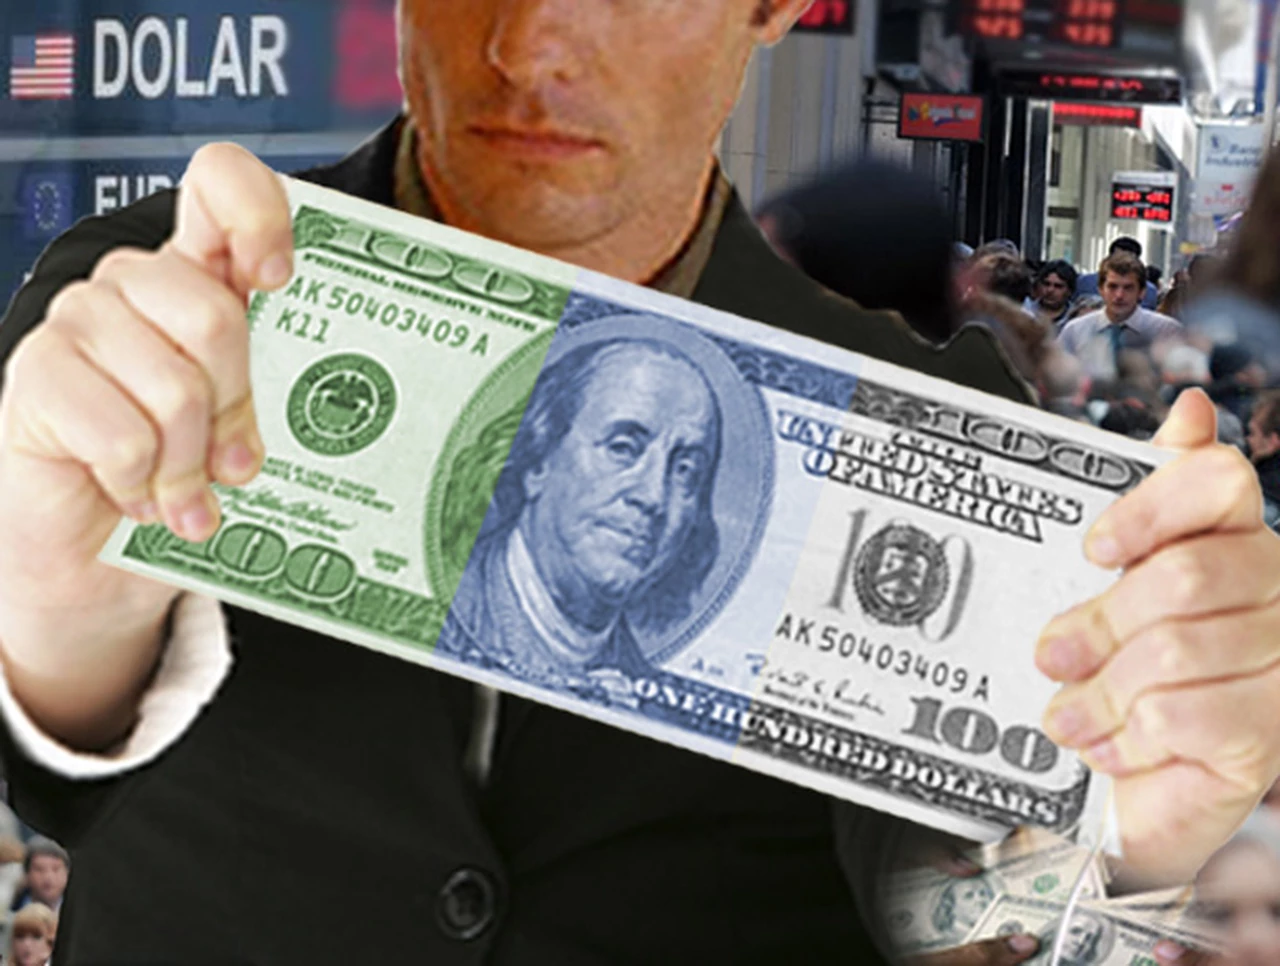 Estrepitosa caí­da del dólar blue: pierde 27 centavos y cierra a 5,88 pesos, tras tocar $6,15 el jueves